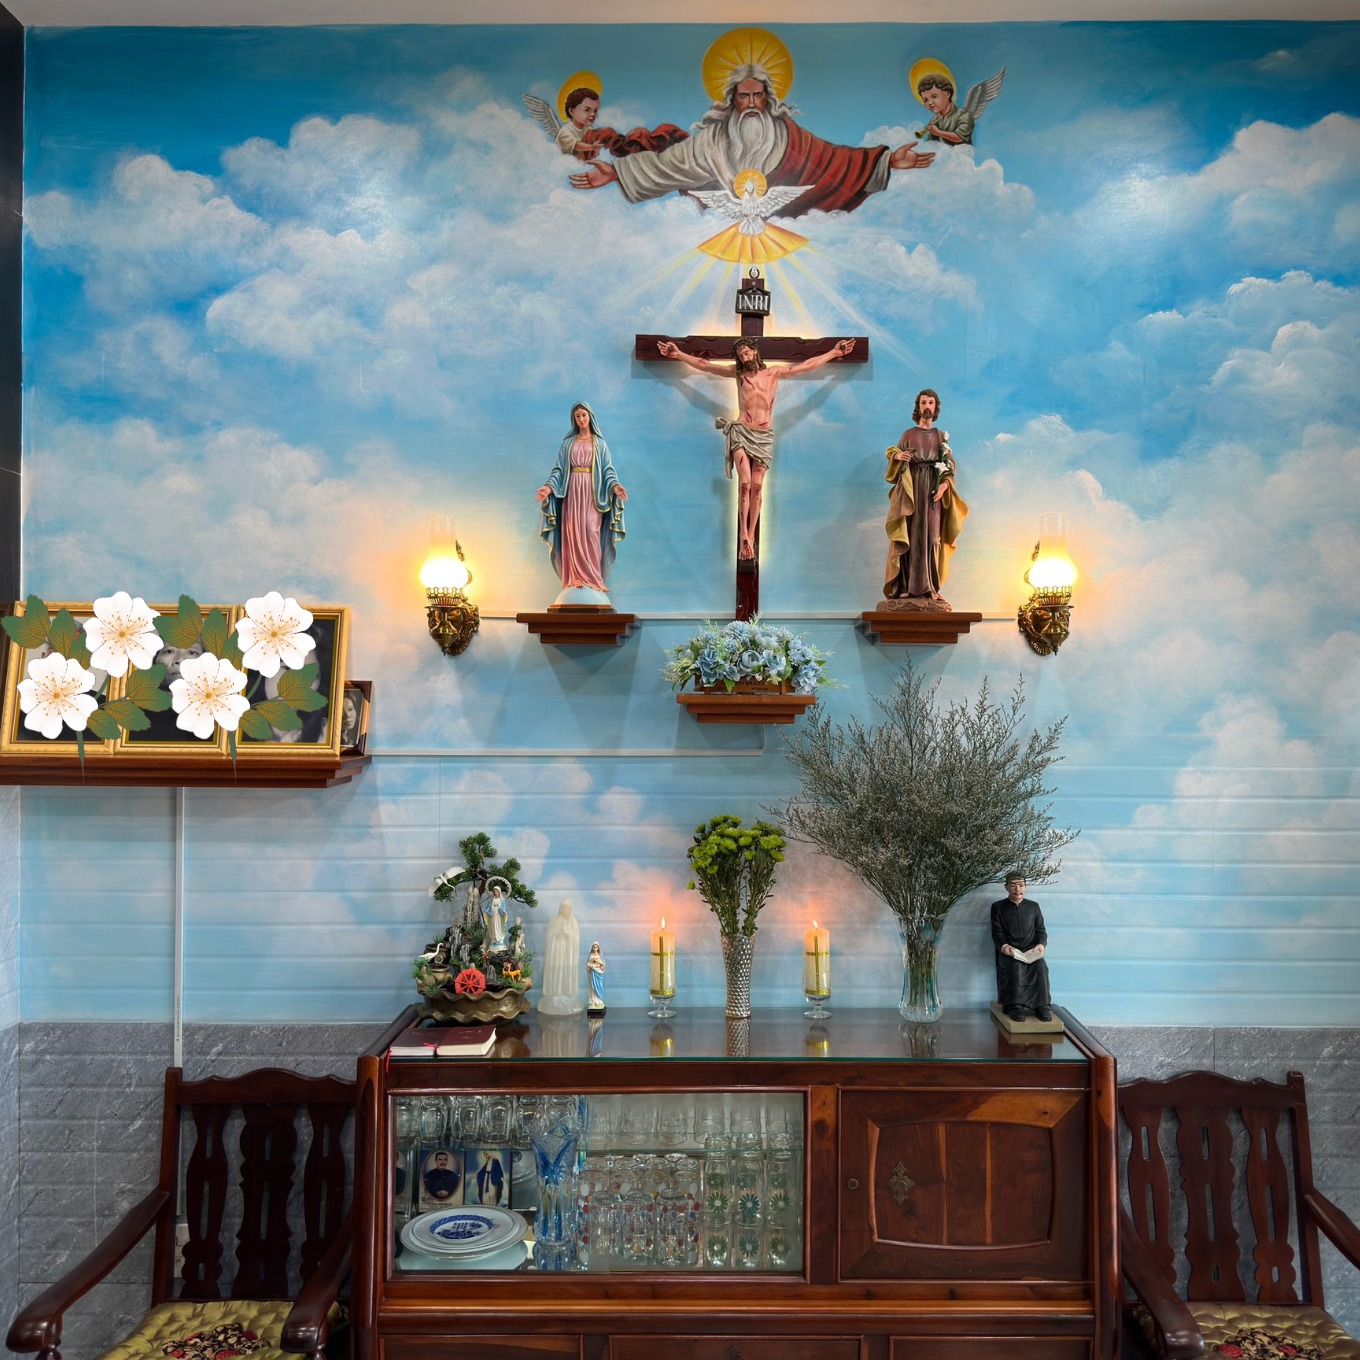 Bàn Thờ Chúa Phòng Khách và Tượng Đức Mẹ Lộ Đức – khách hàng ở Nha Trang, Khánh Hòa